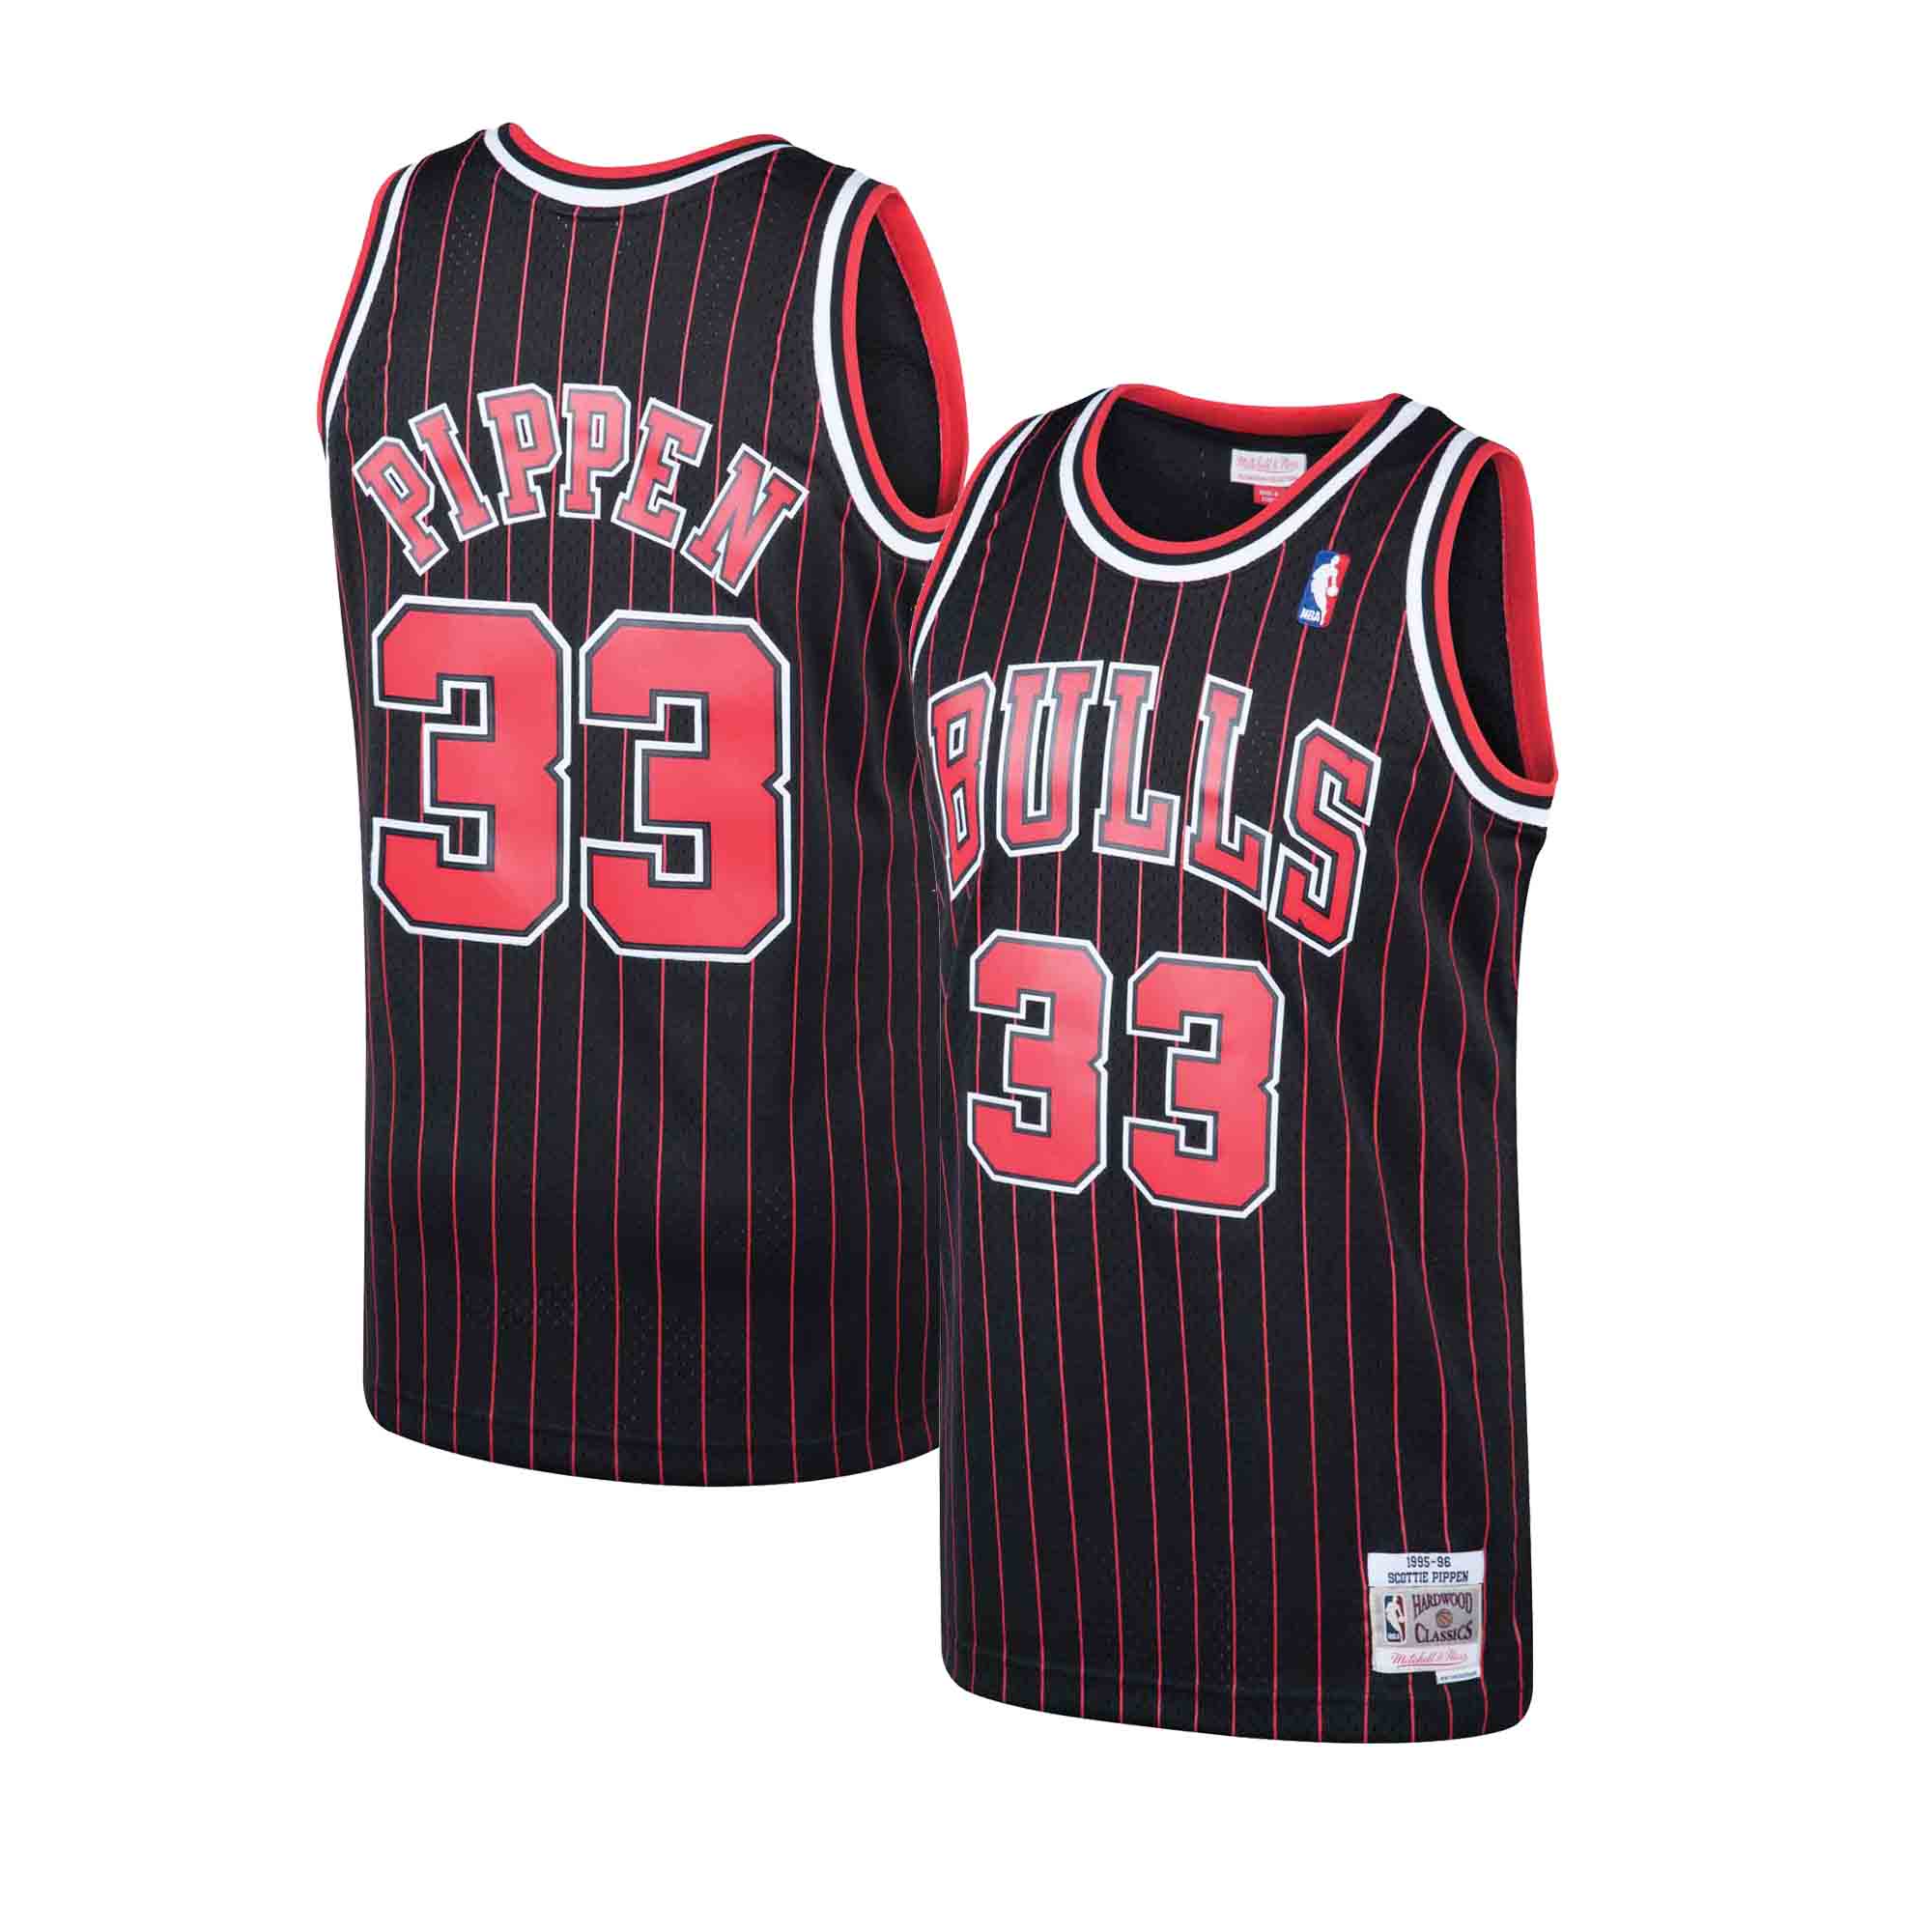 Scottie Pippen Bulls Jersey, No. 33 Essential T-Shirt for Sale by Desznr